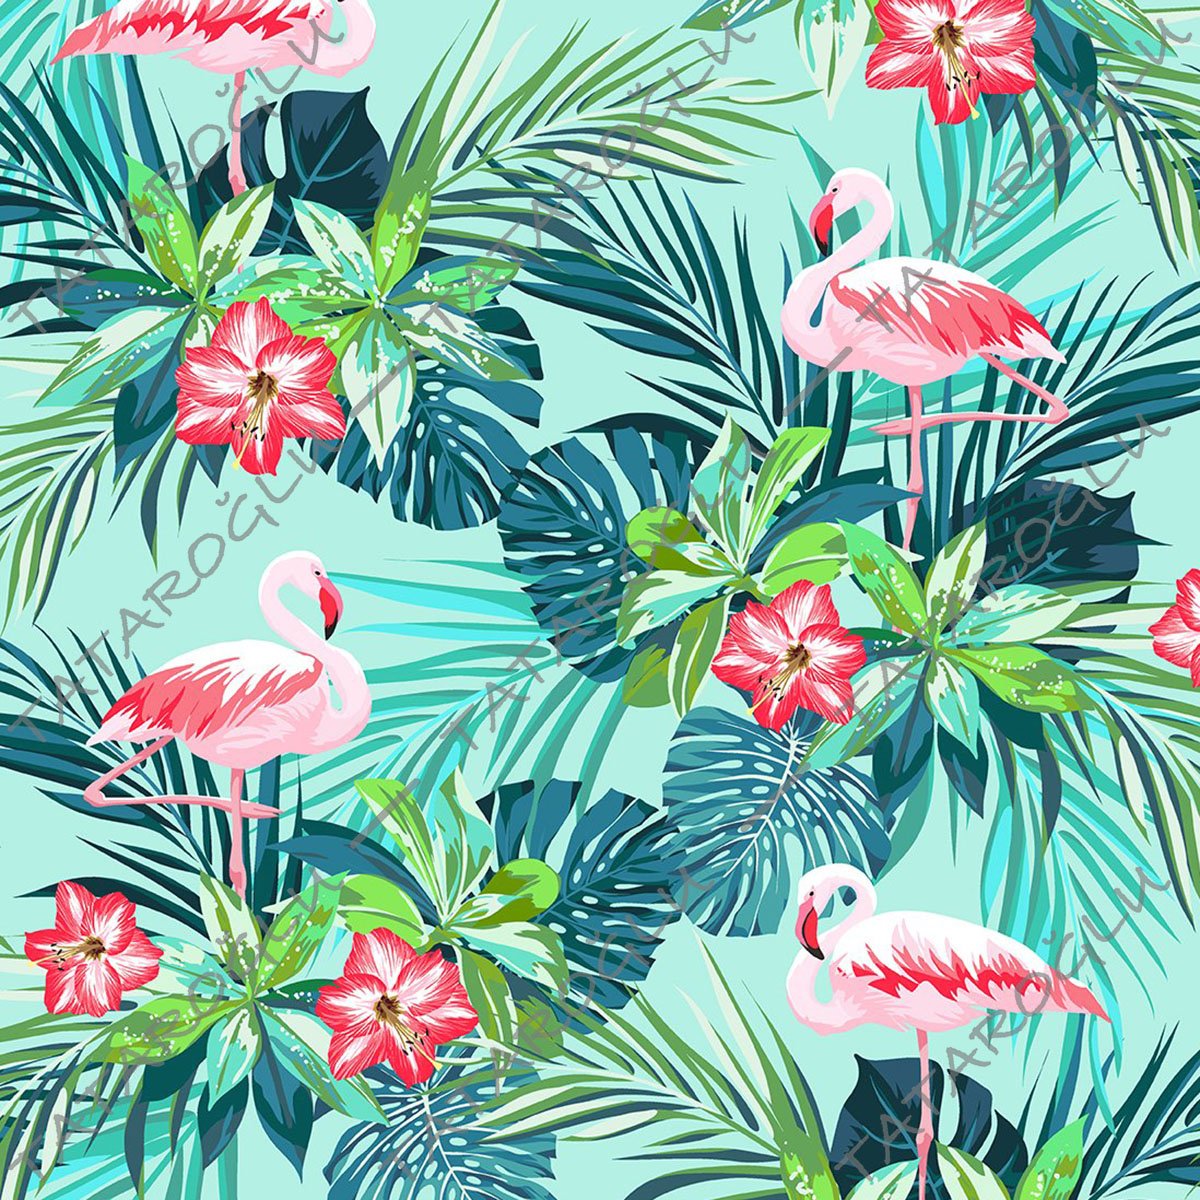 Tropikal Serisi-Turkuaz Zeminli Flamingo Desenli Dijital Baskılı Kumaş